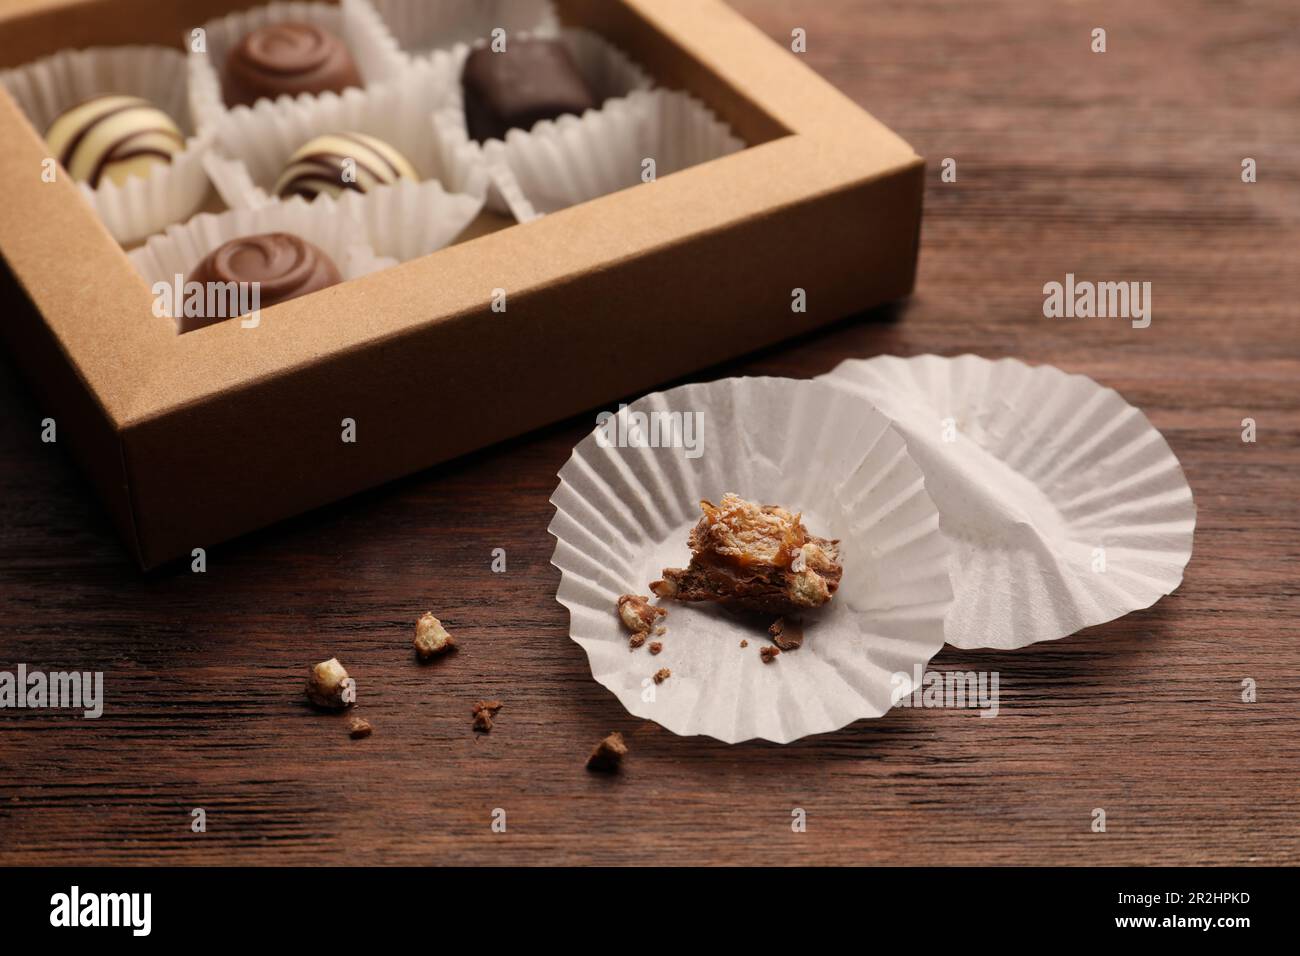 Bicchieri di carta caramella vicino a scatola parzialmente vuota di dolci al cioccolato su tavola di legno, primo piano Foto Stock